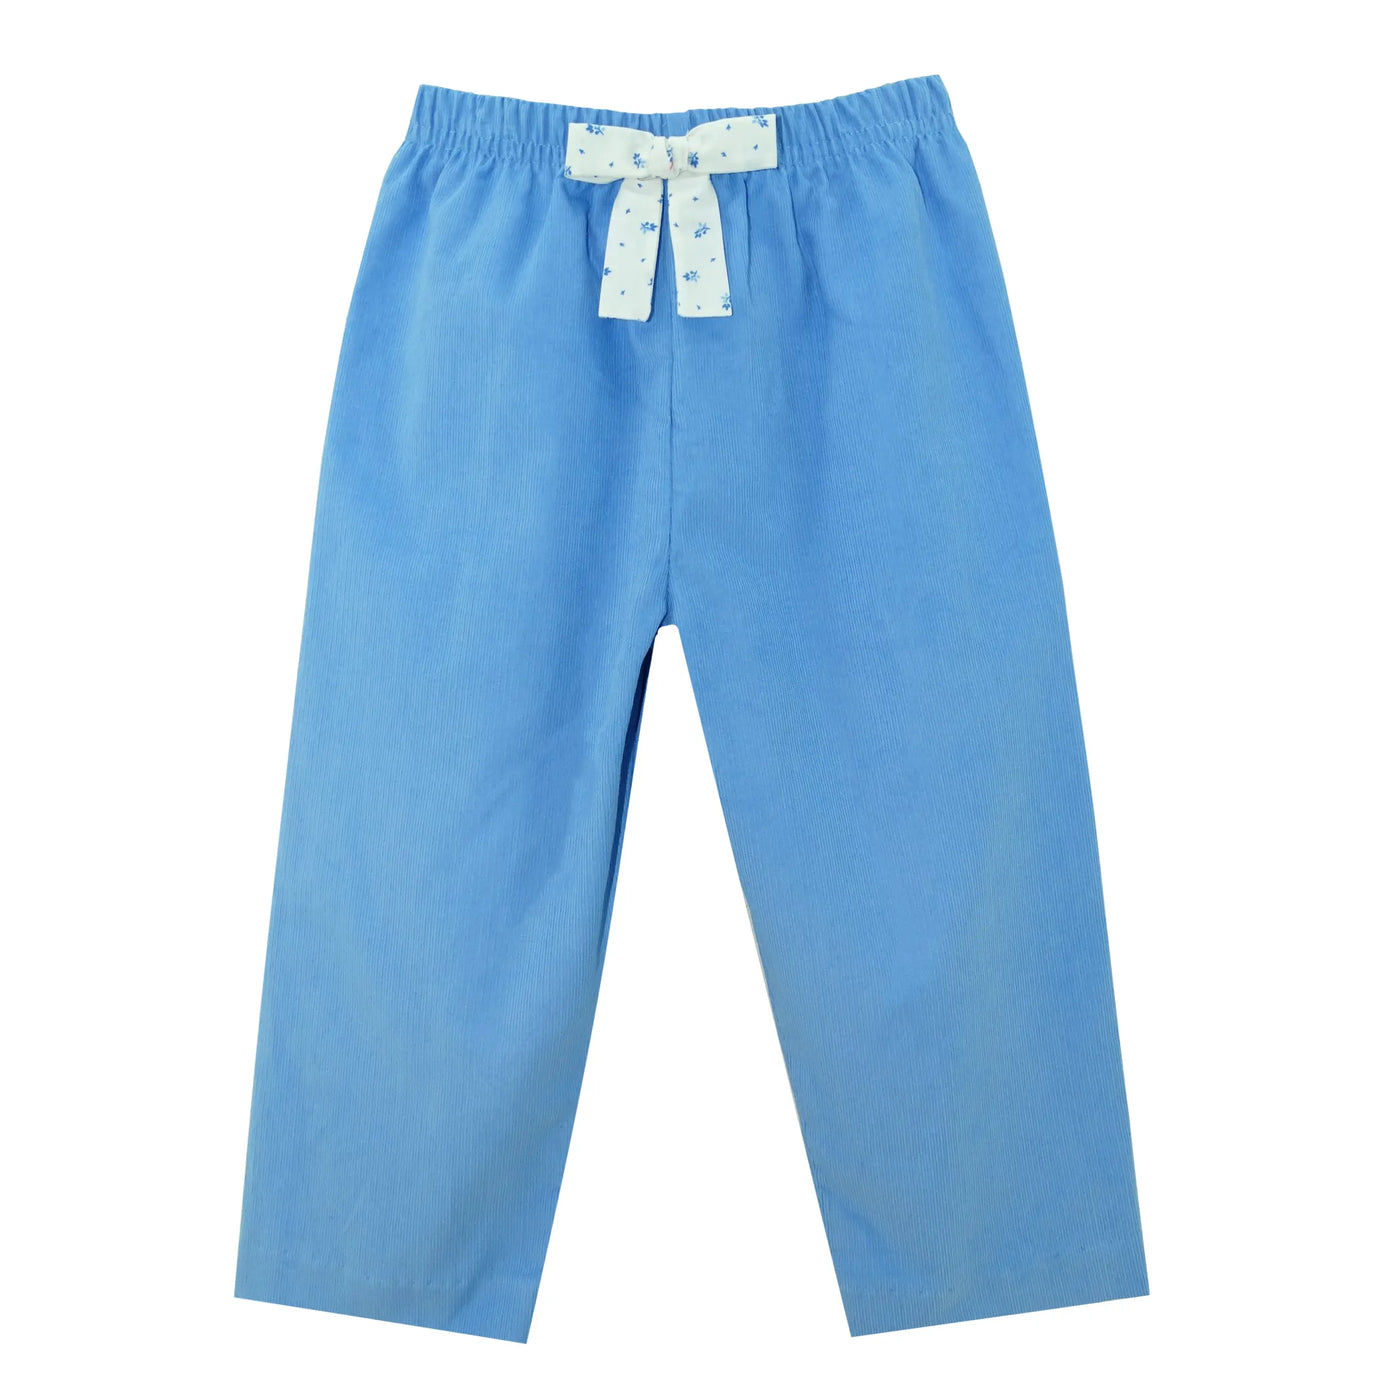 Periwinkle Blue Floral Blouse/Pants Set Zuccini Kids